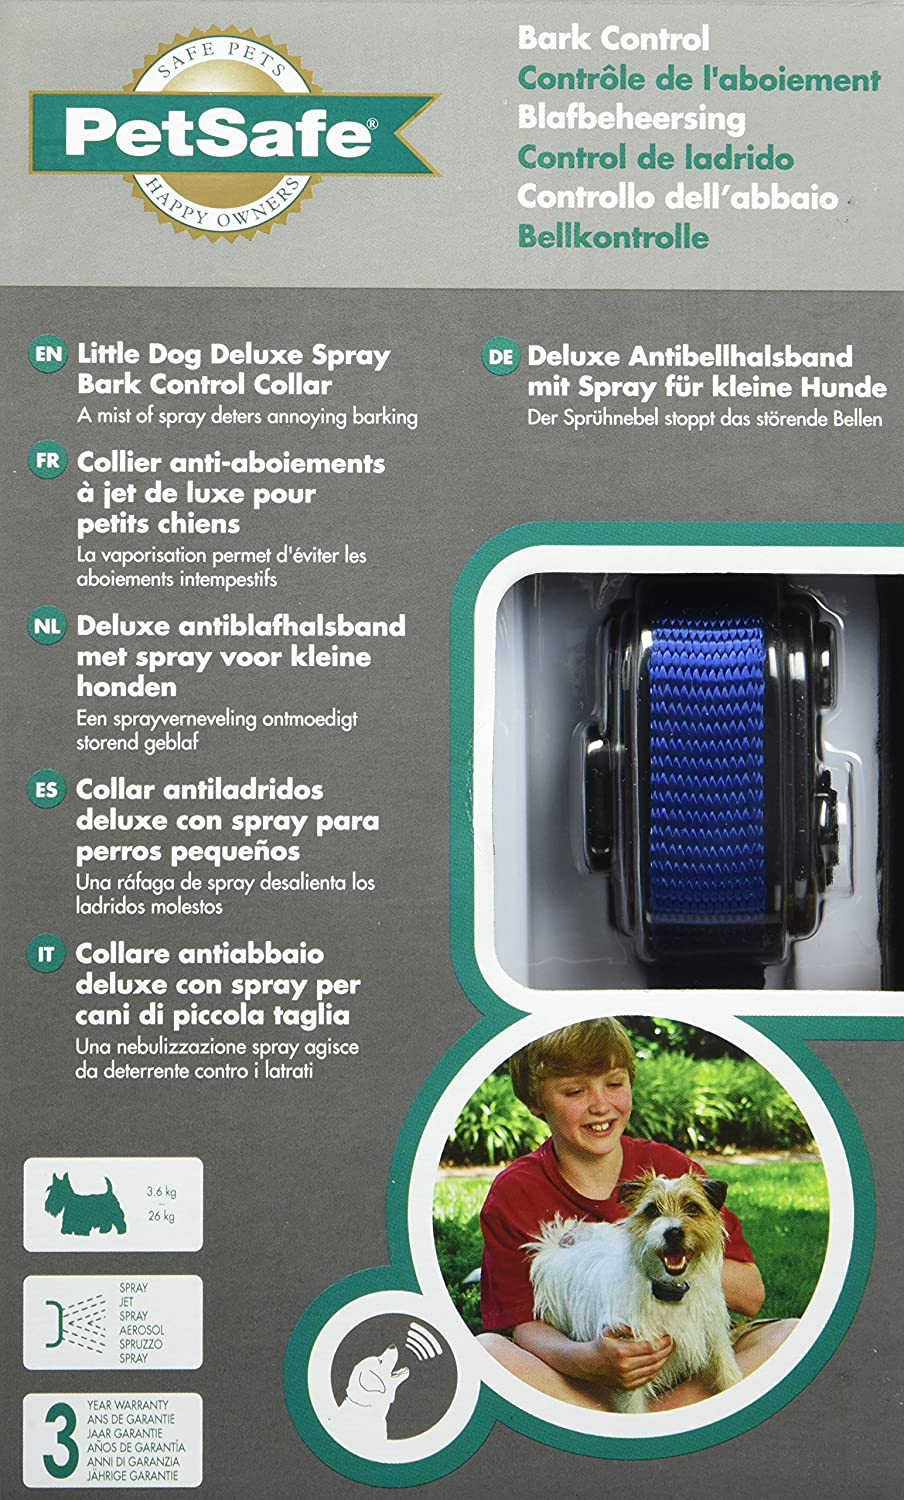 Collare anti-abbaio spray Deluxe per piccoli cani Petsafe